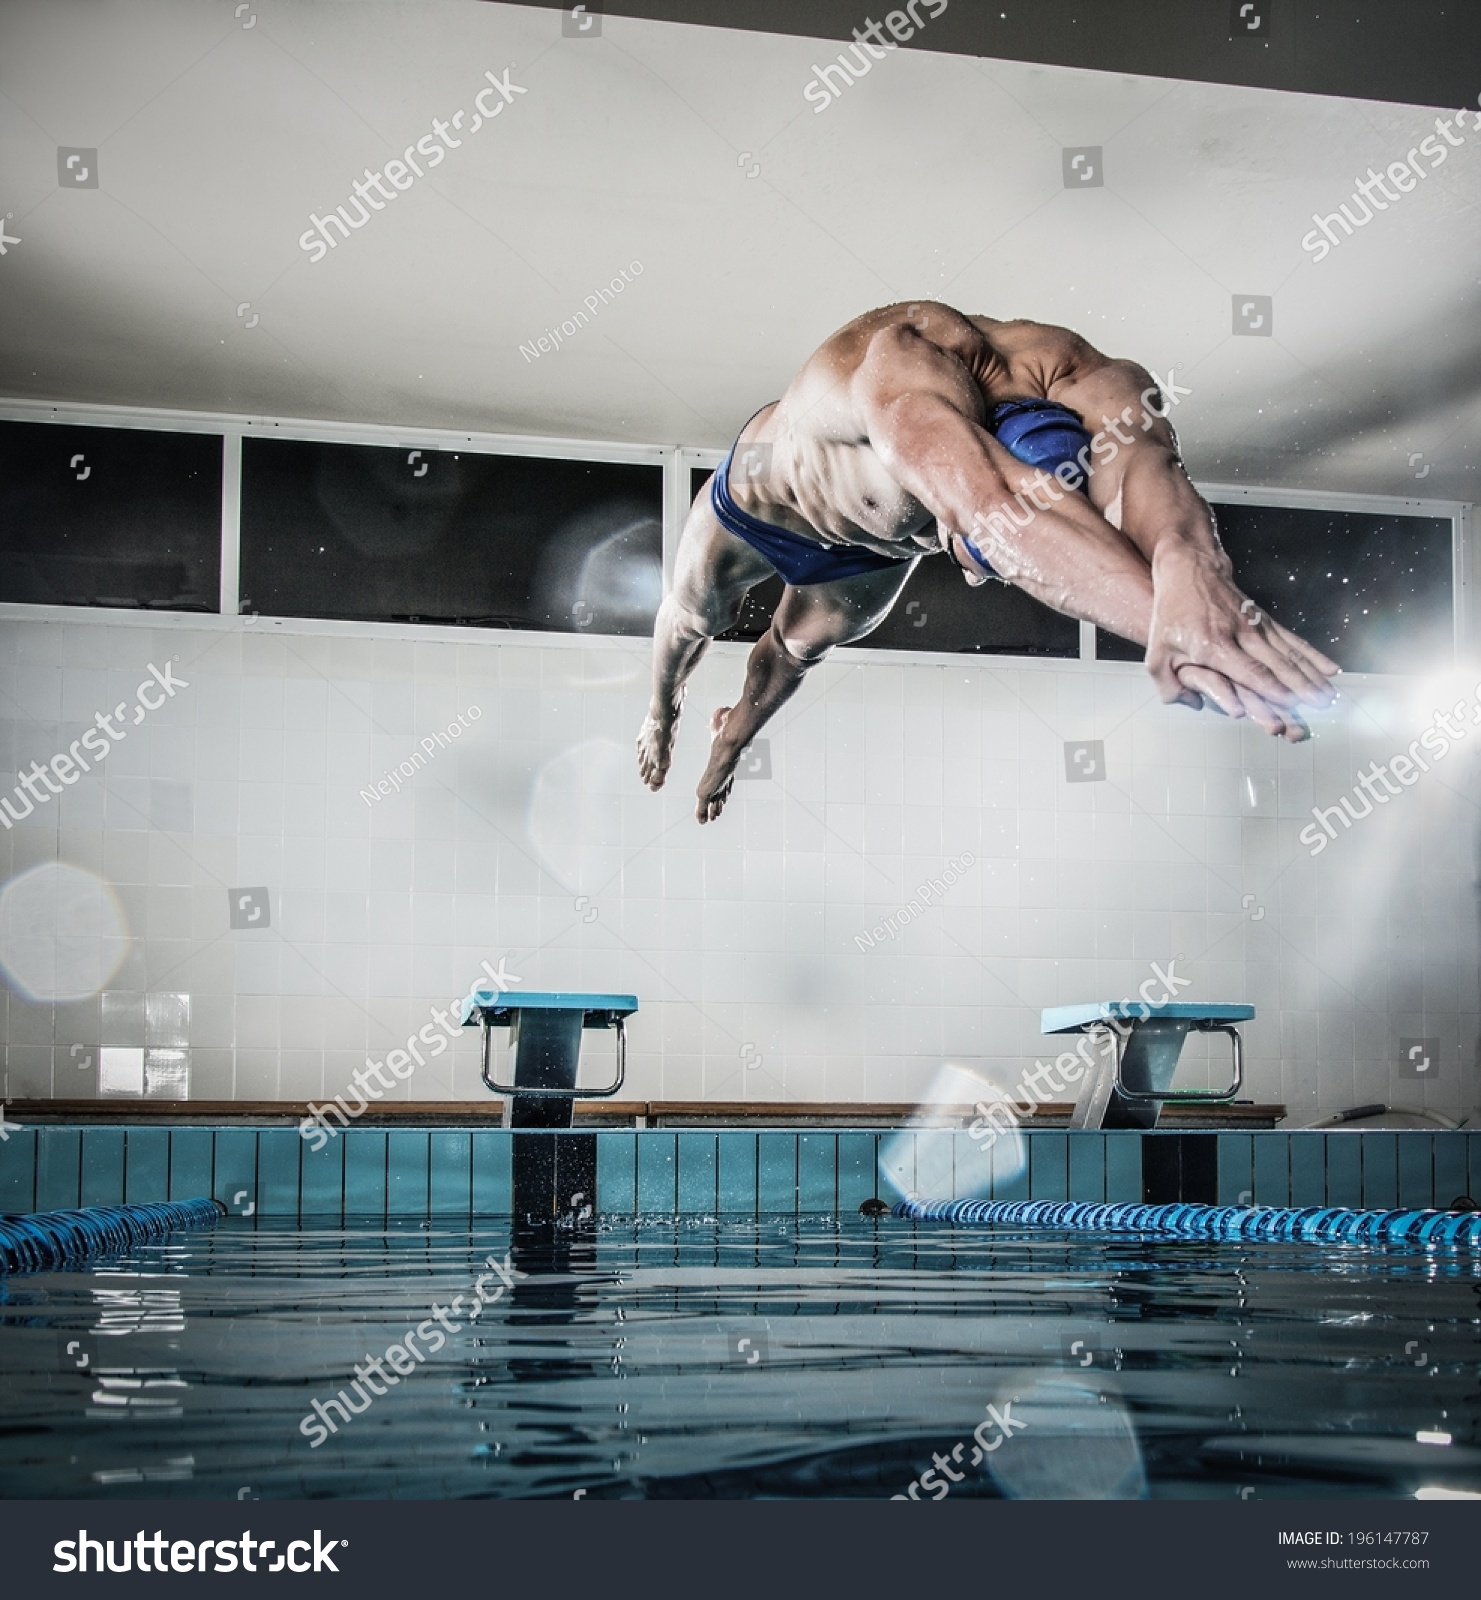 年轻肌肉游泳运动员跳起跑架在一个游泳池 - 人